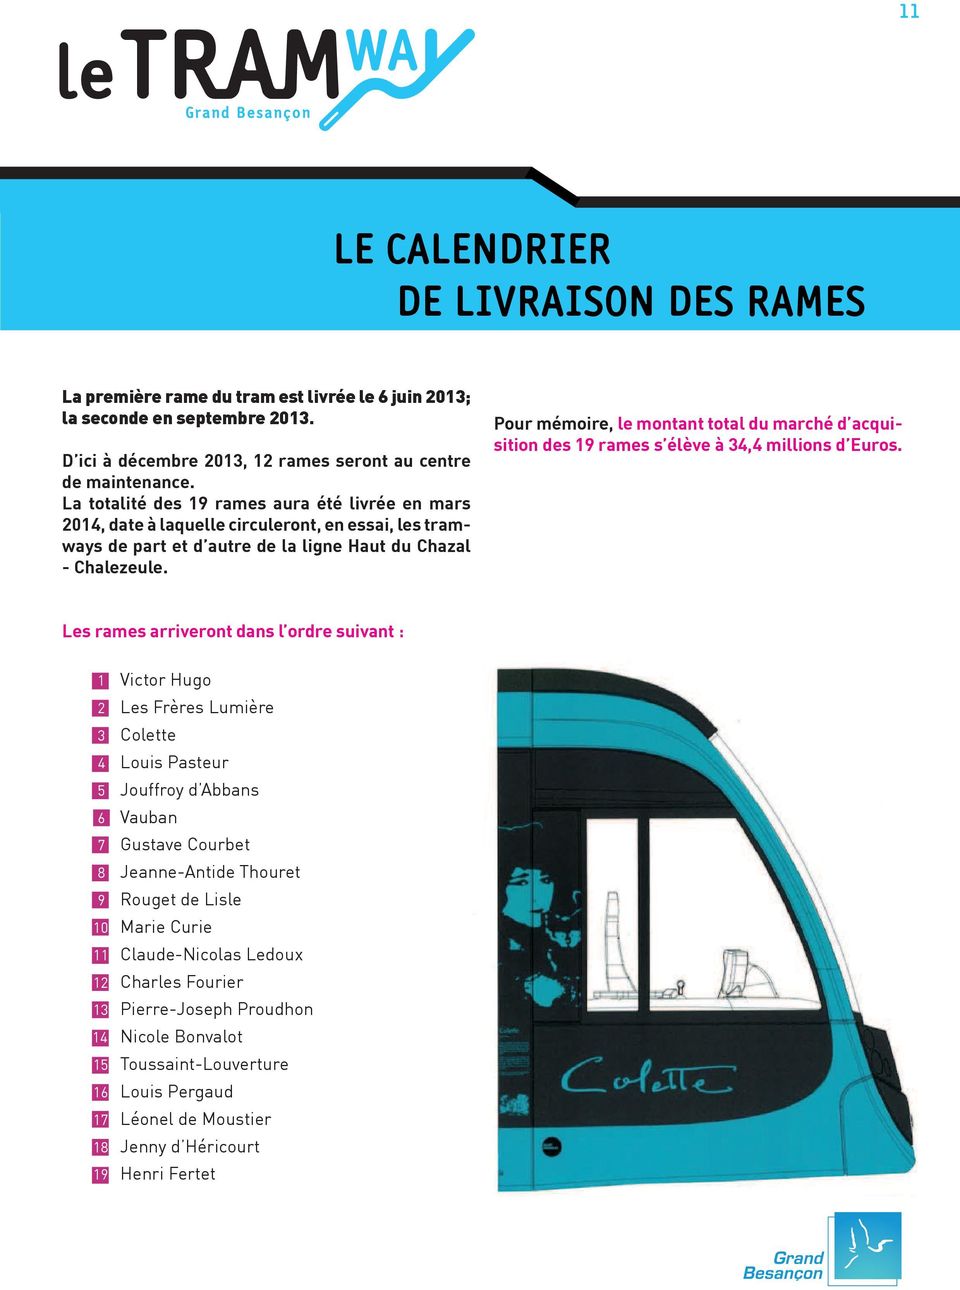 La totalité des 19 rames aura été livrée en mars 2014, date à laquelle circuleront, en essai, les tramways de part et d autre de la ligne Haut du Chazal - Chalezeule.